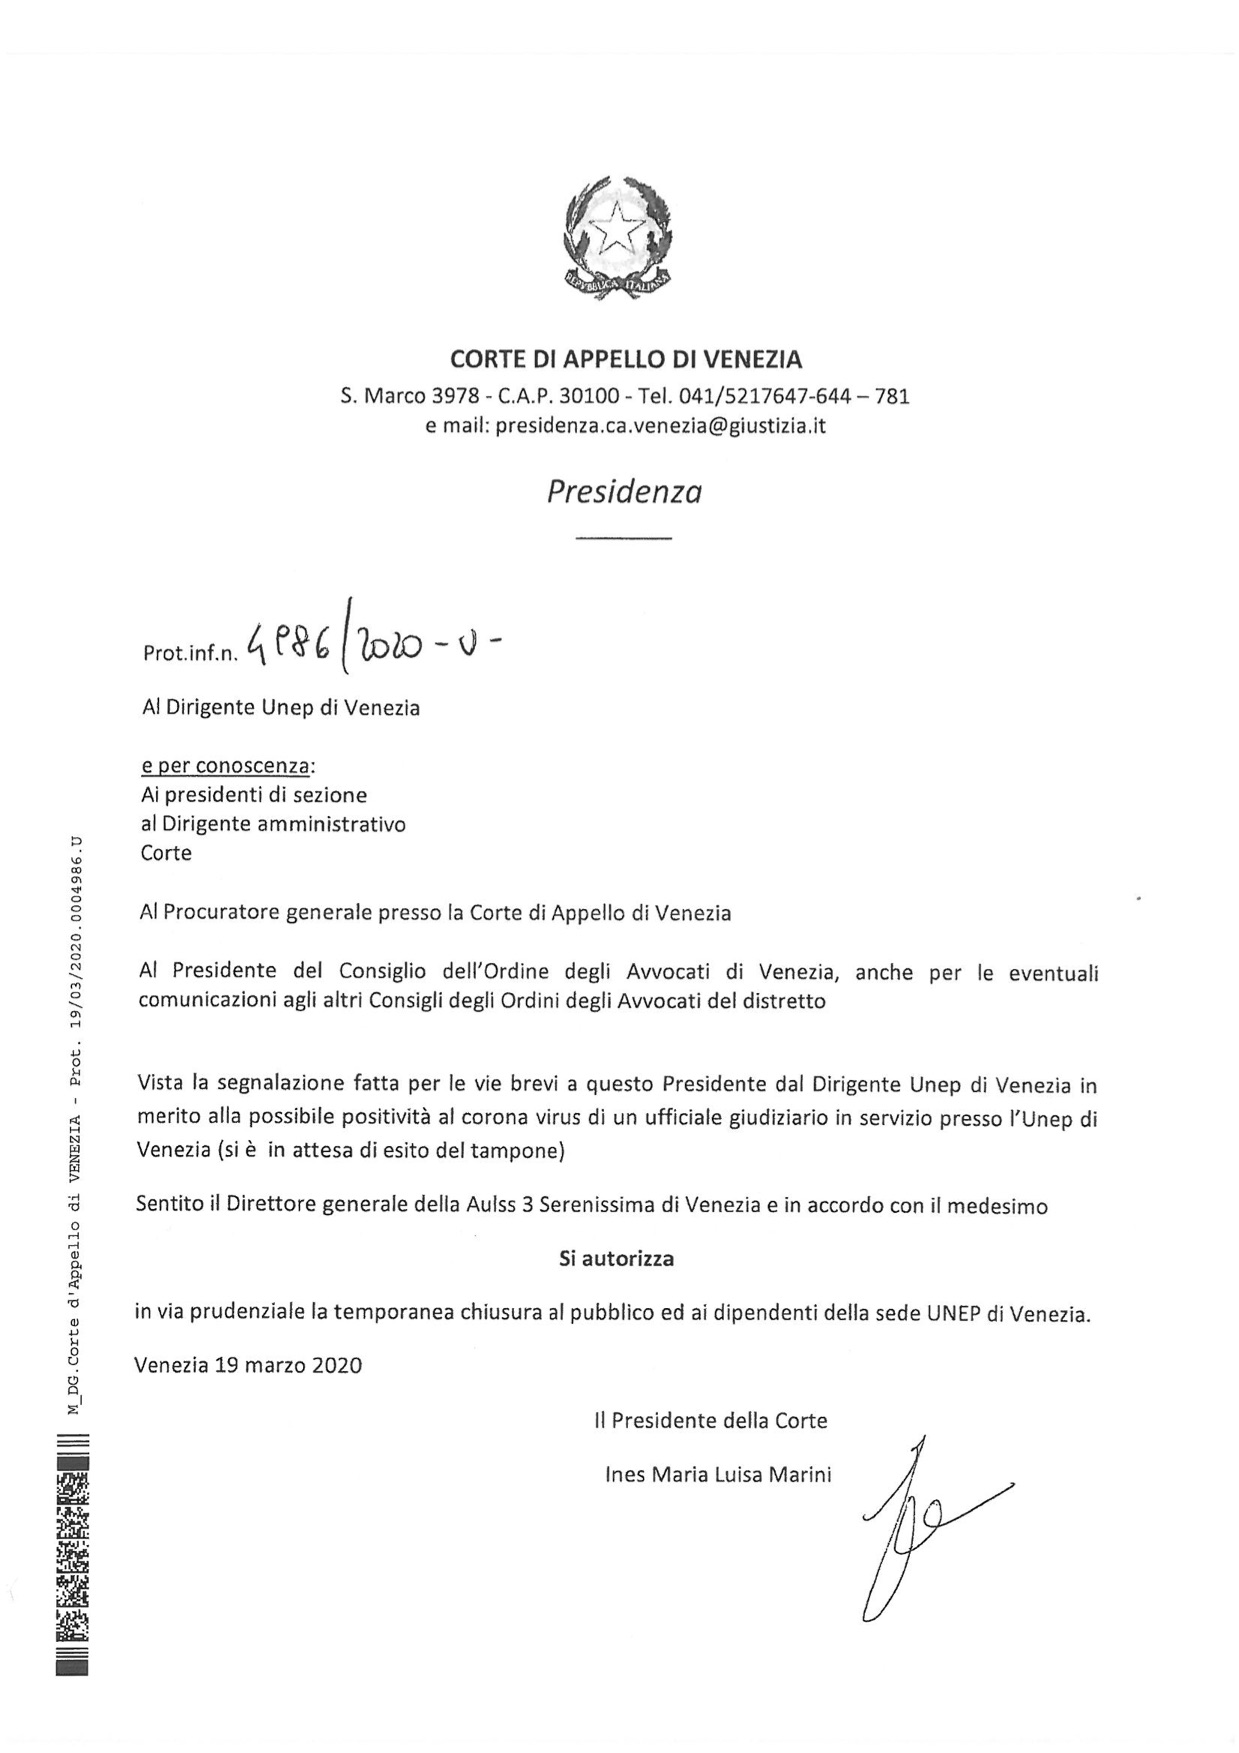 Provvedimento Presidente Corte d'Appello di Venezia 19.03.2020 in merito alla chiusura temporanea degli Uffici UNEP